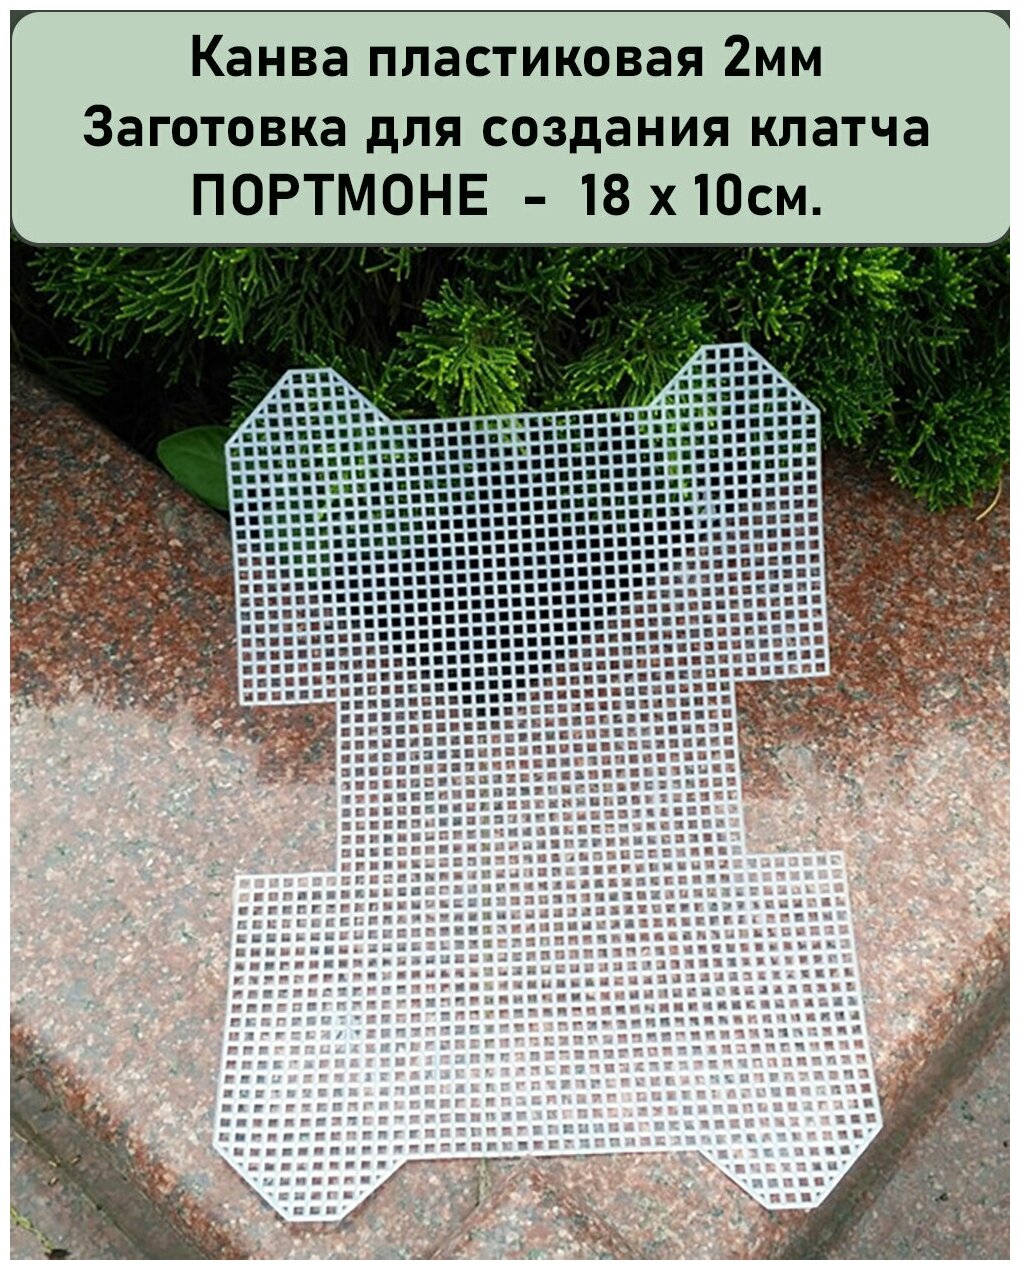 Пластиковая канва. Заготовка для вышивки-вязания сумки маленький клатч (Портмоне) 18 х 10 см, цв. Белый